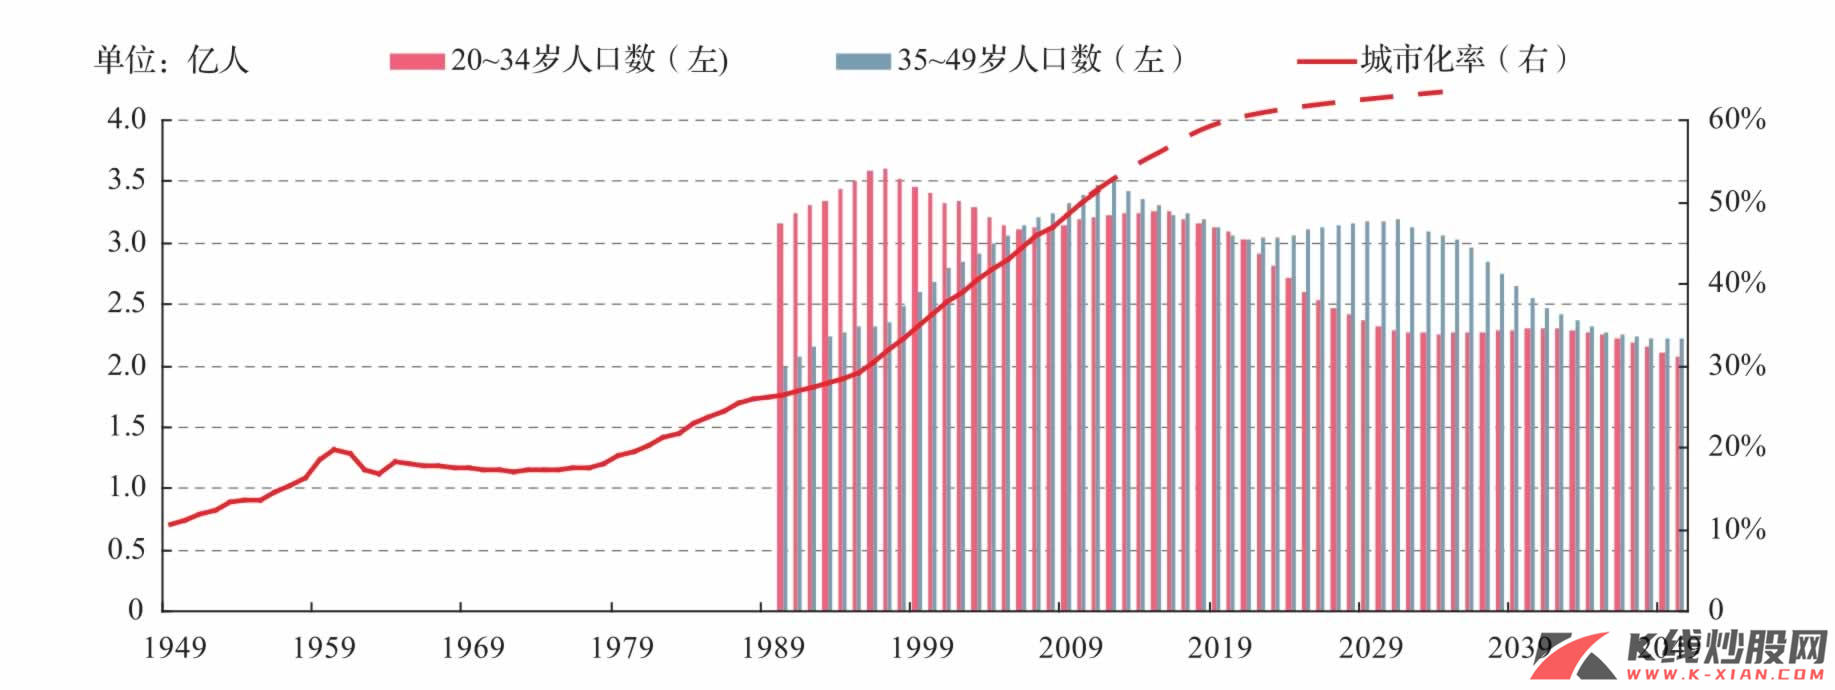 劳动人口与中国的城市化进程